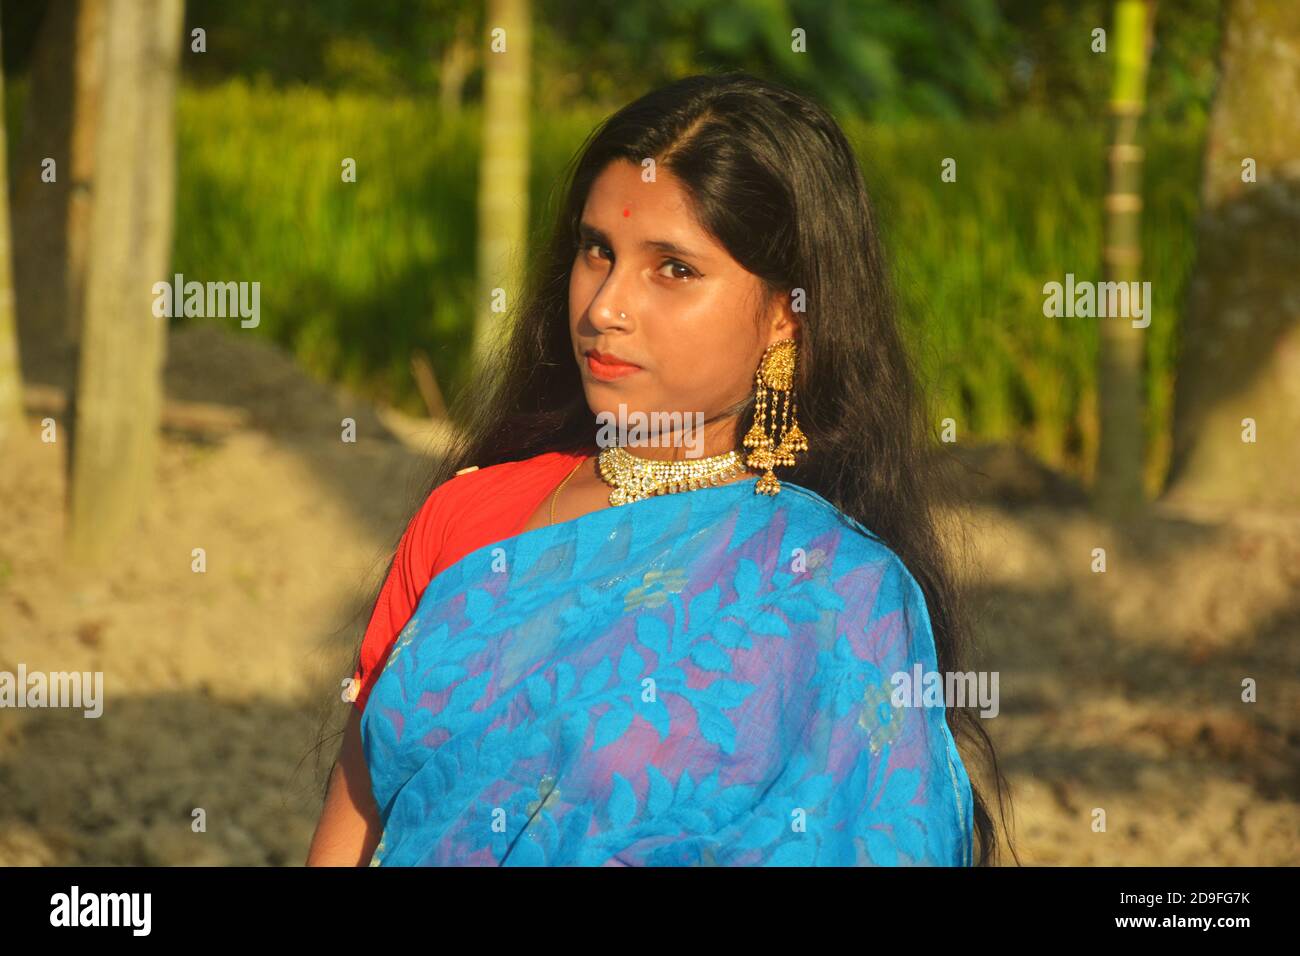 Gros plan d'une jeune fille bengali indienne, portant un sari bleu avec des cheveux longs et une pointe de nez dorée, des boucles d'oreilles, un collier dans un champ labouré, un foyer sélectif Banque D'Images